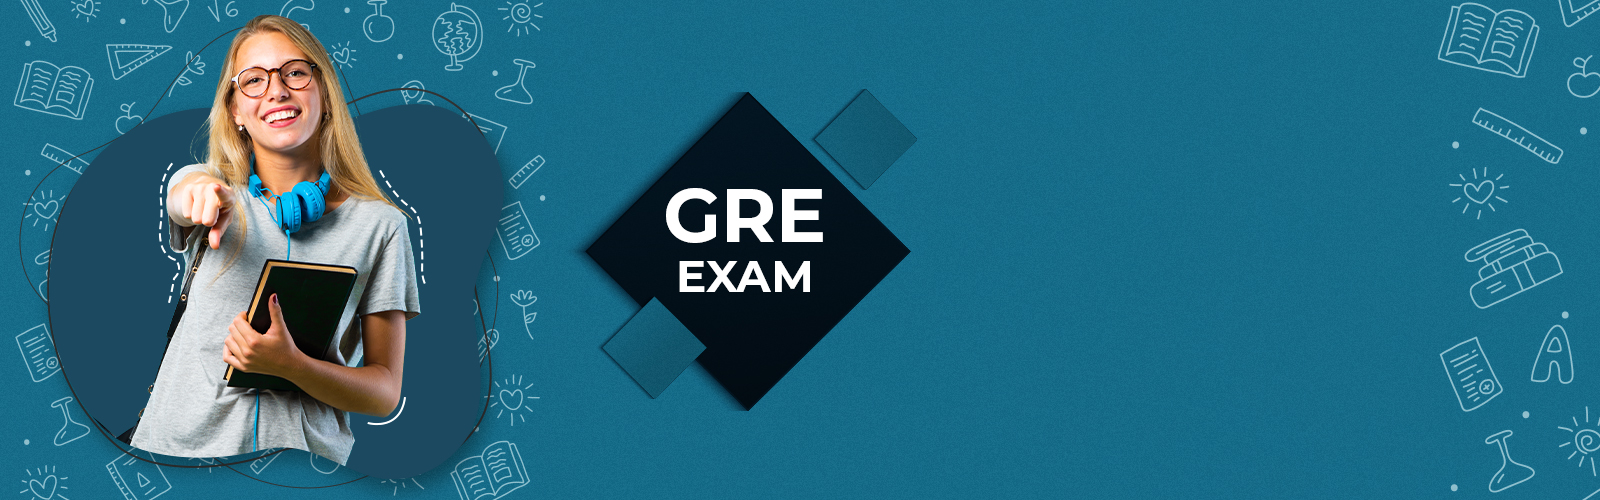 GRE Exam